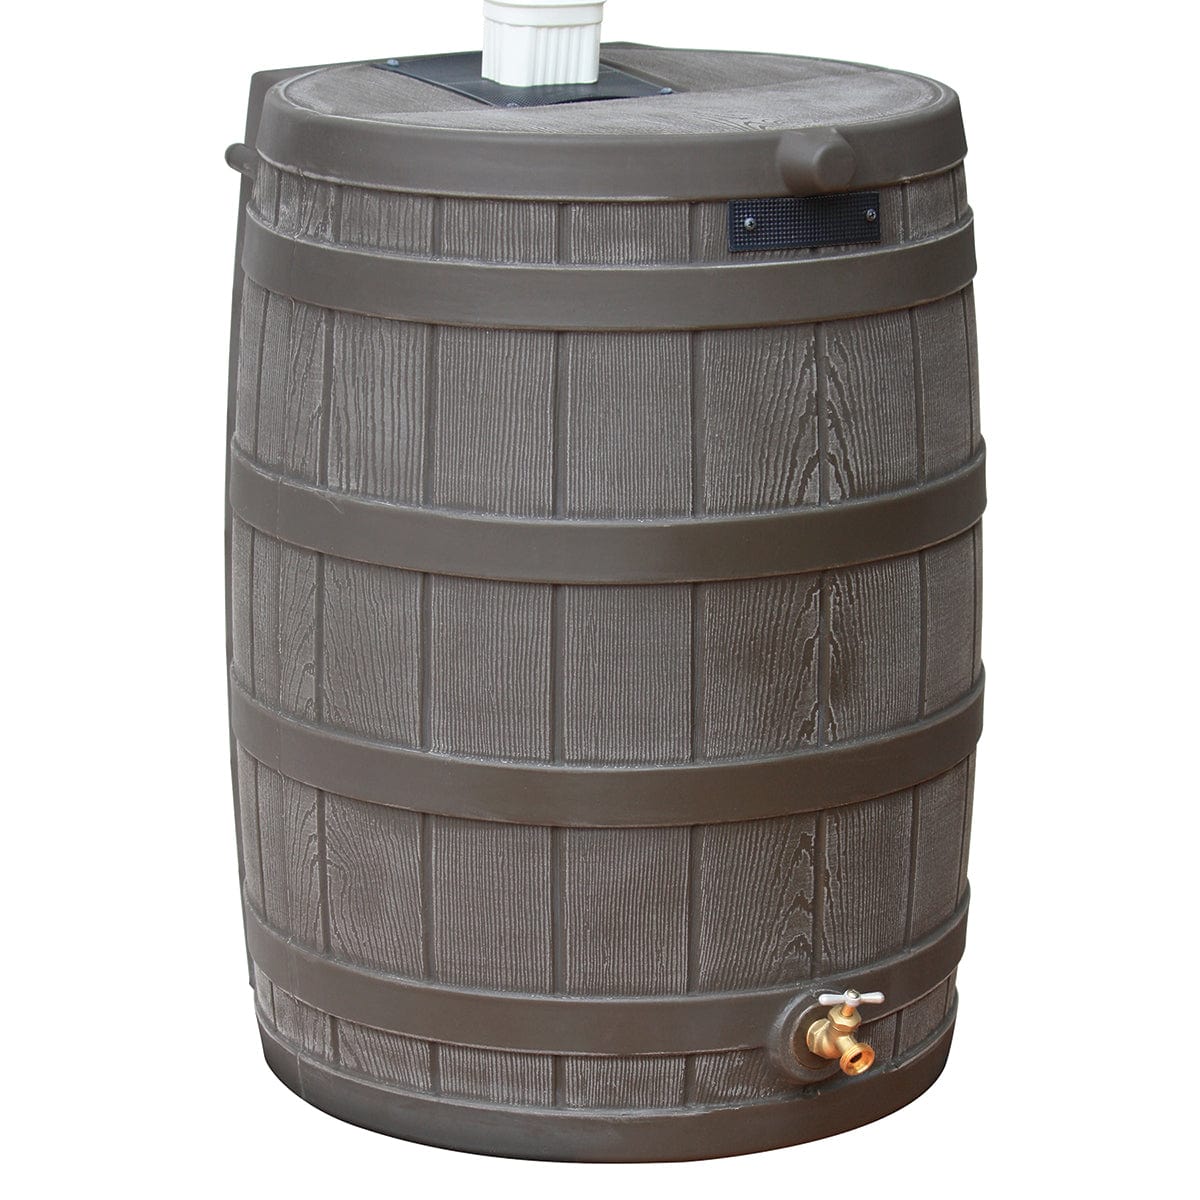 Rain Wizard 50 Gallon Rain Barrel